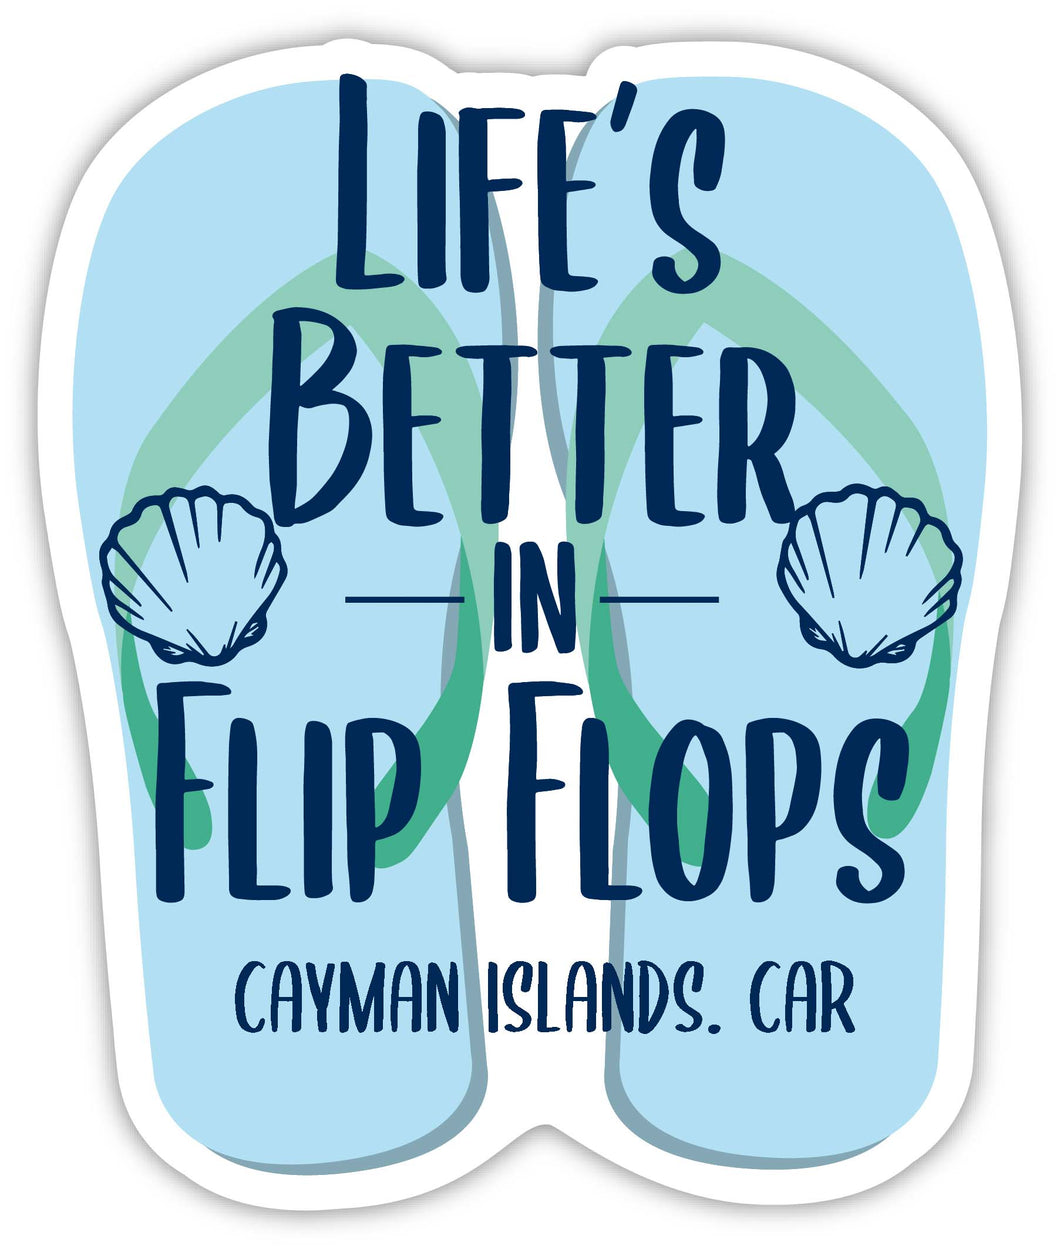 Cayman Islands Caribbean Souvenir 4 Inch Vinyl Decal Sticker Flip Flop Design